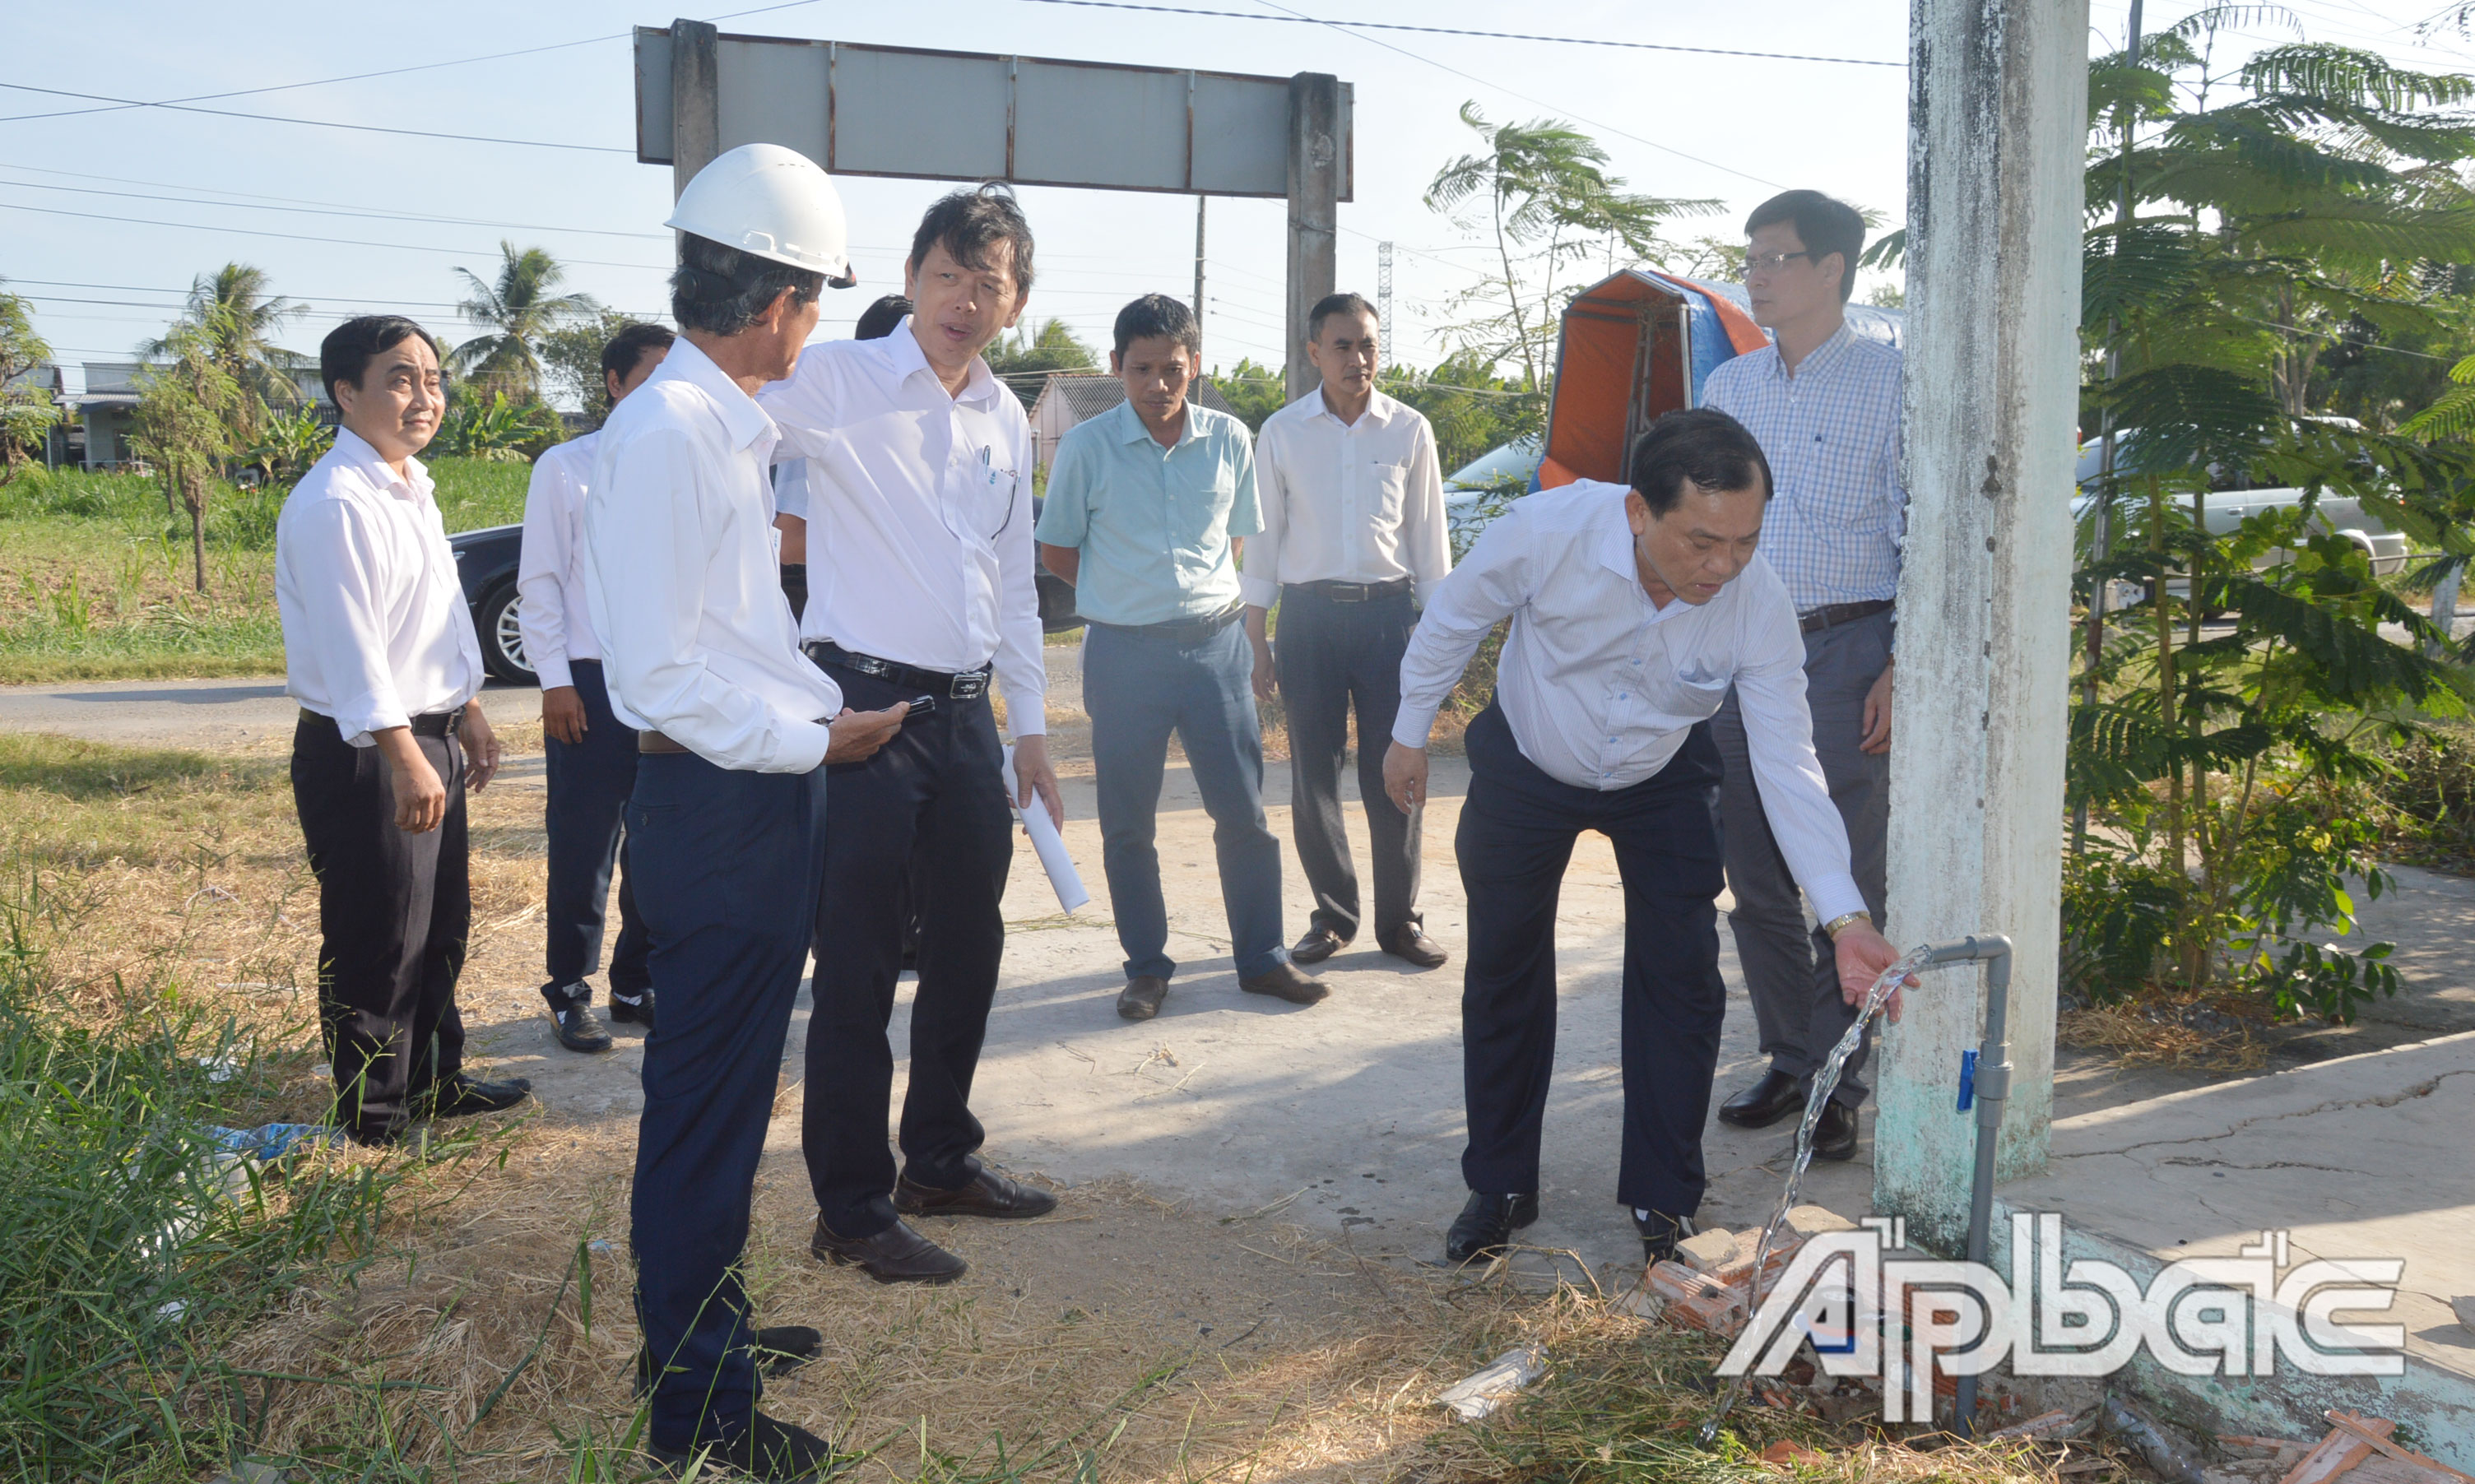 Đồng chí Nguyễn Văn Vĩnh kiểm tra tình hình mở vòi nước công cộng phục vụ người dân tại xã Phước Trung.